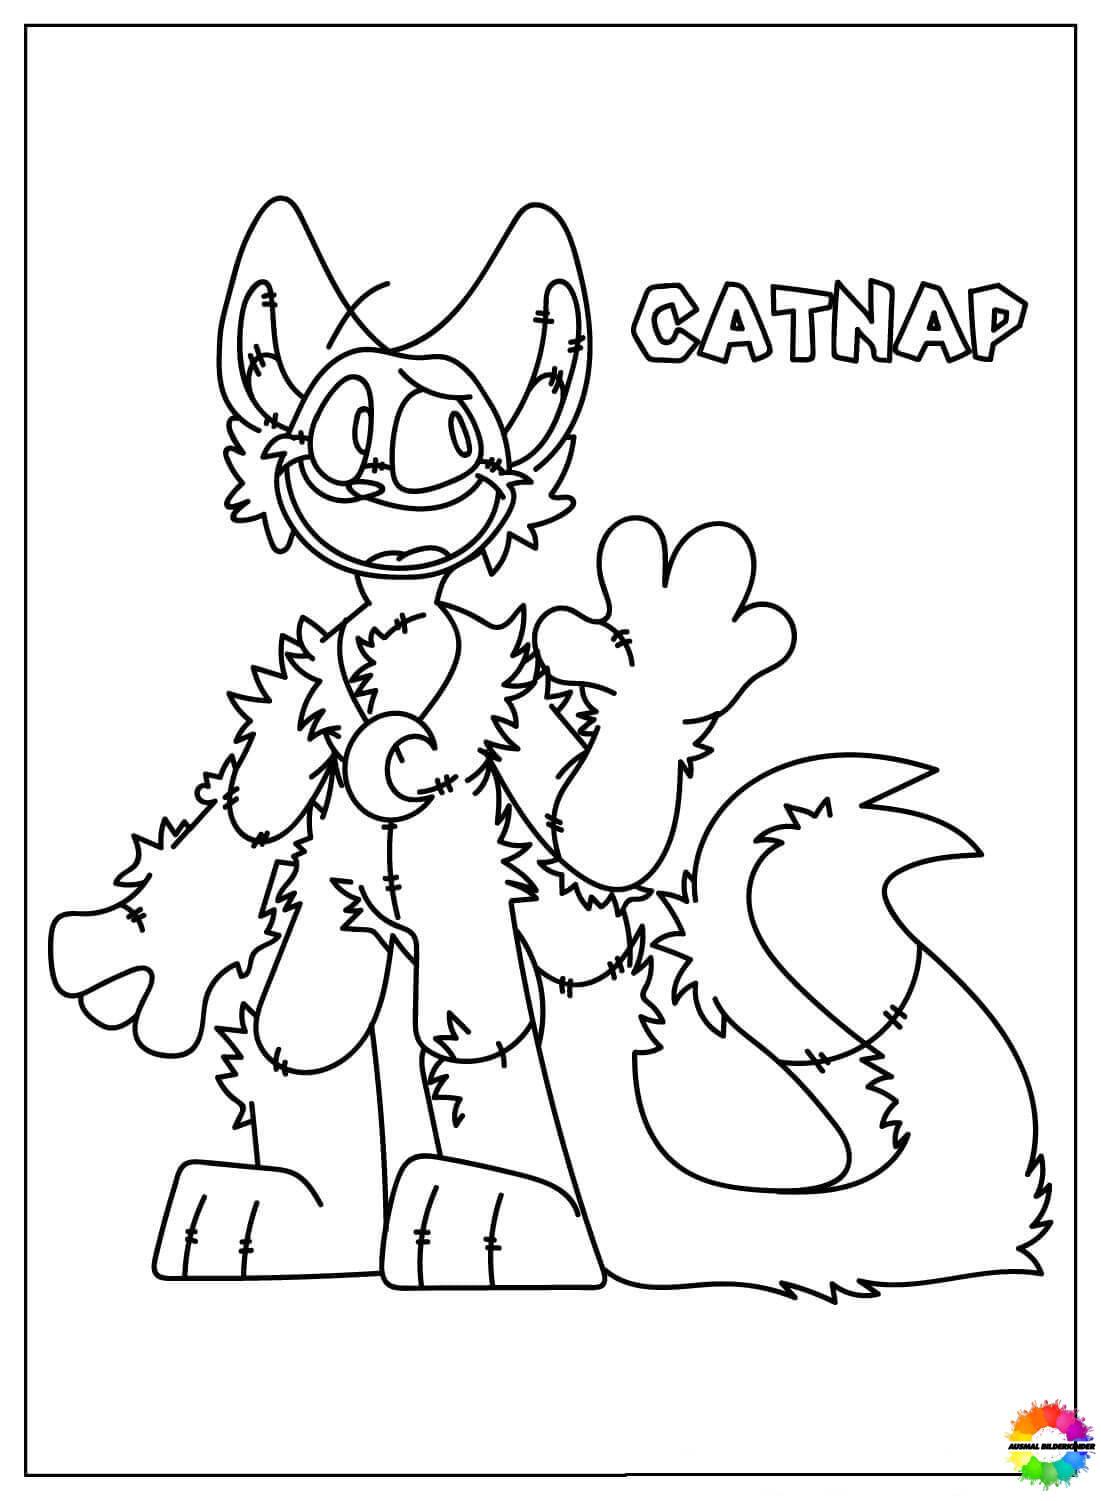 CatNap 14